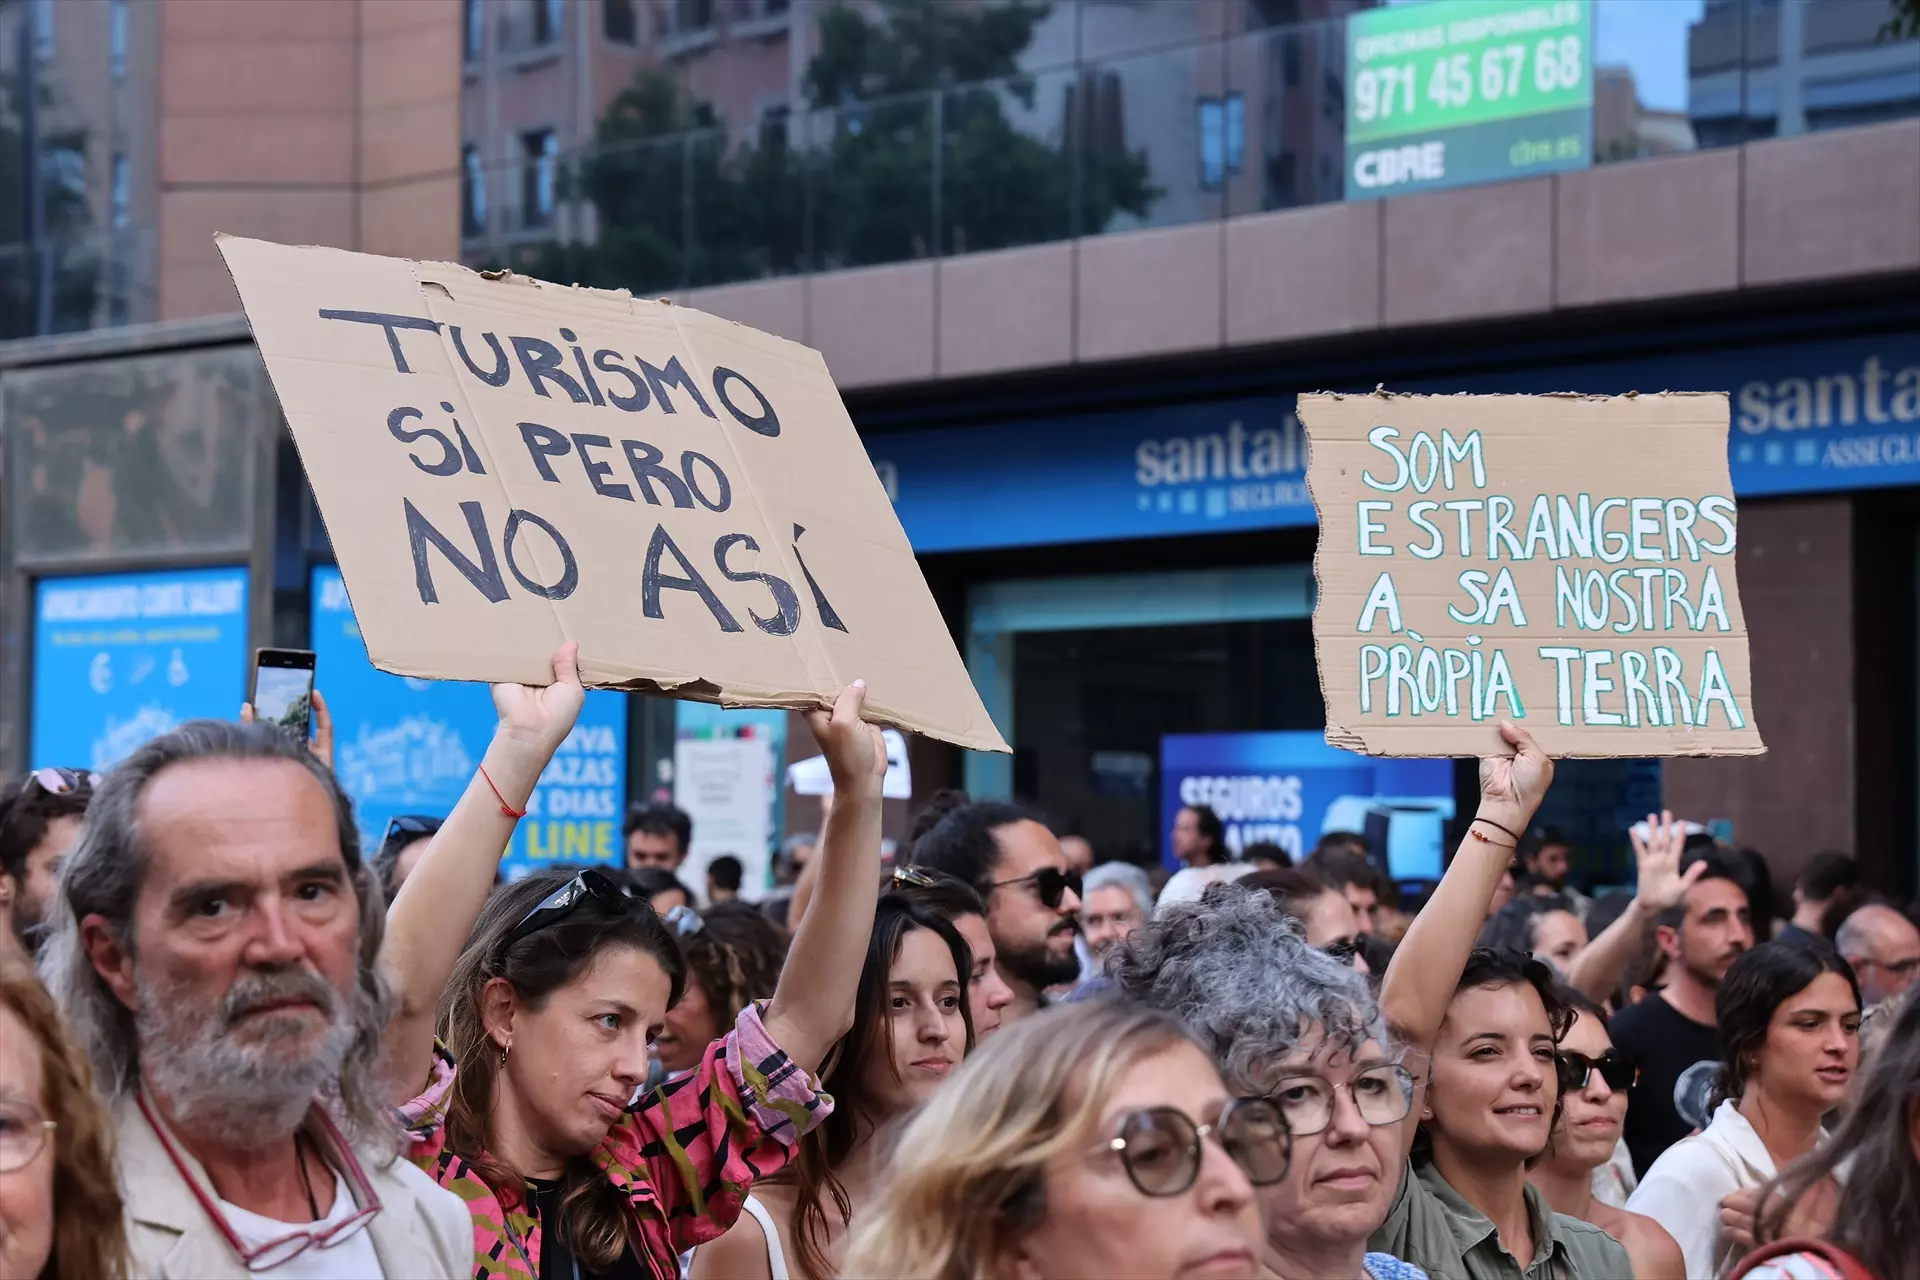 Decenas de personas durante una manifestación contra la masificación turística en Palma de Mallorca — Isaac Buj / Europa press